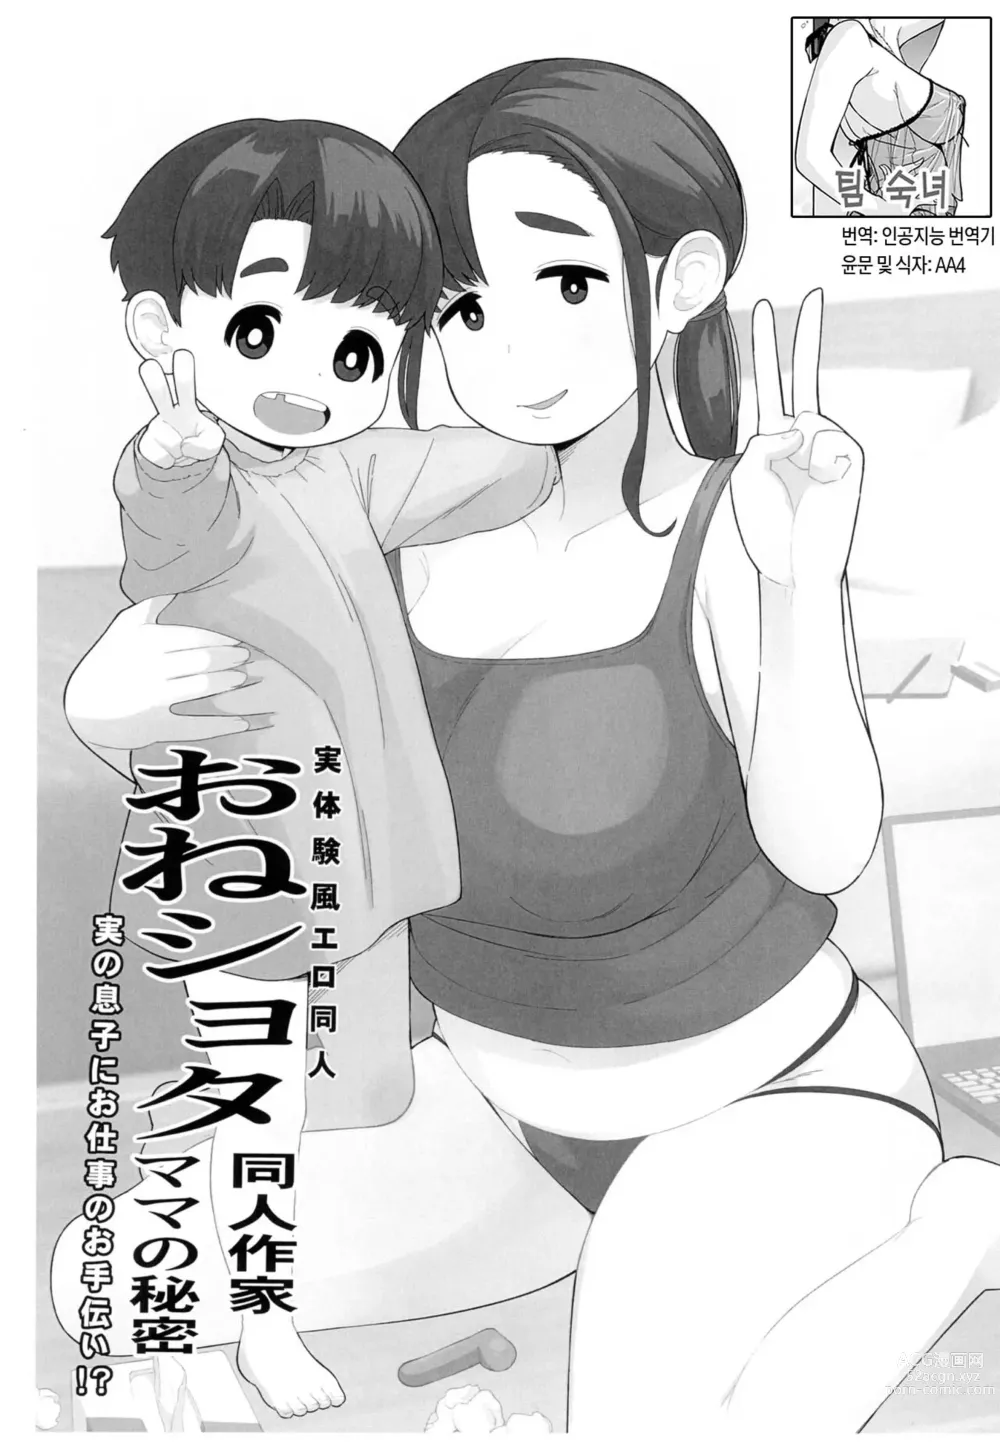 Page 1 of doujinshi 체험수기류 소설 에로동인 오네쇼타 동인작가 엄마의 비밀